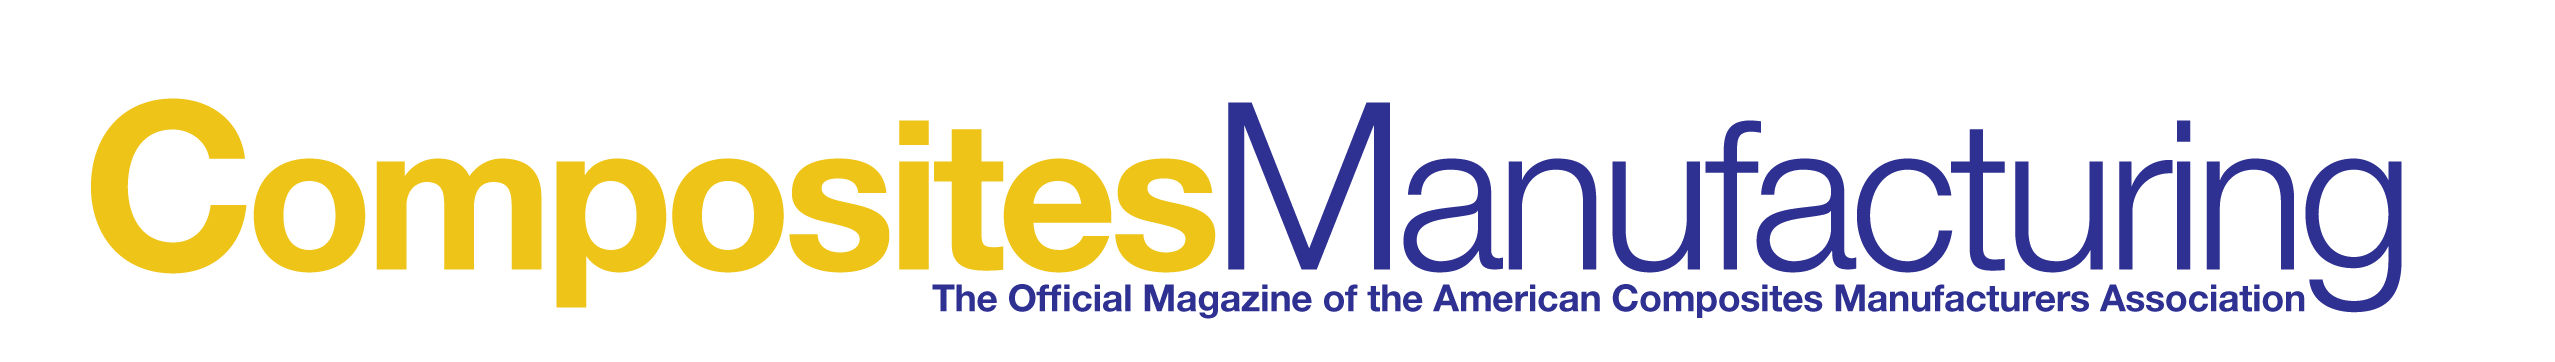 Composites Manufacturing Magazine logo